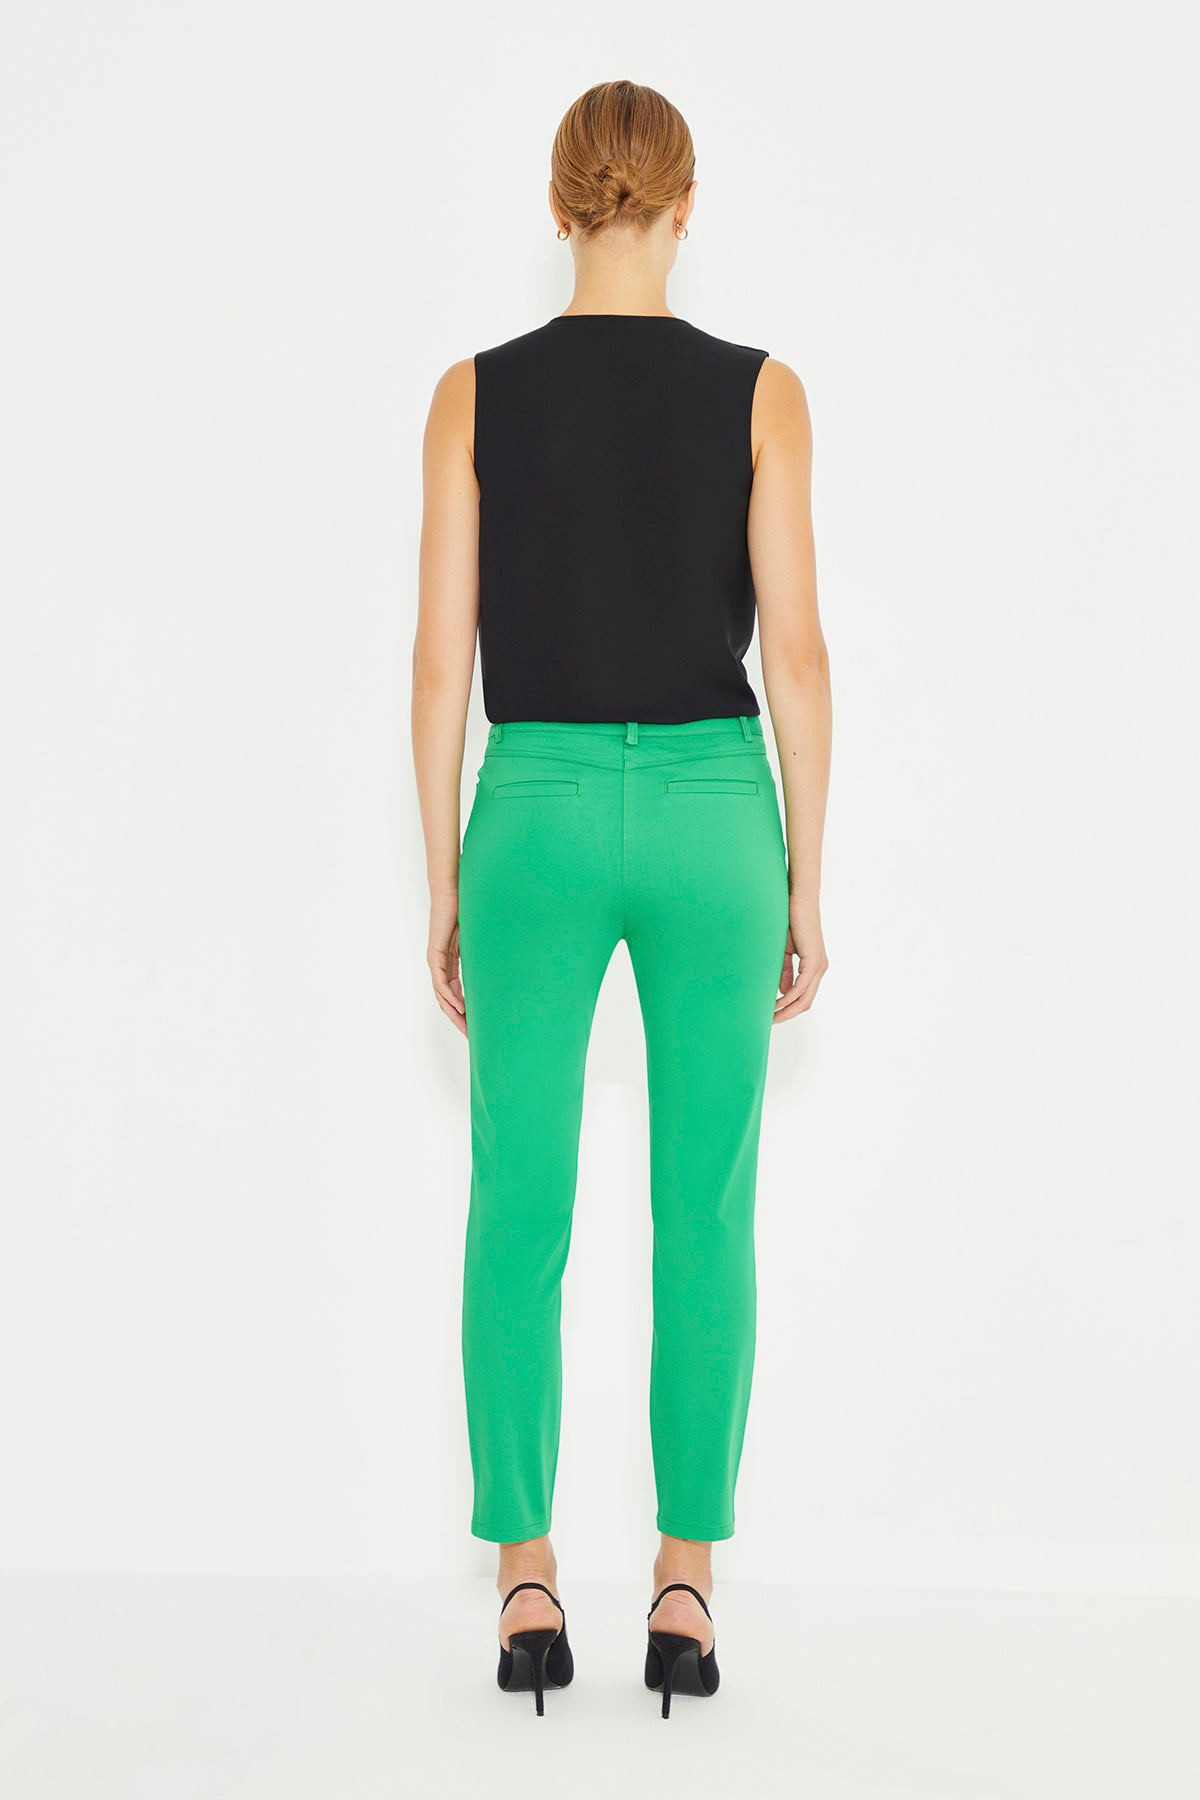 Green Five Pocket Slim Fit Women's Trousers